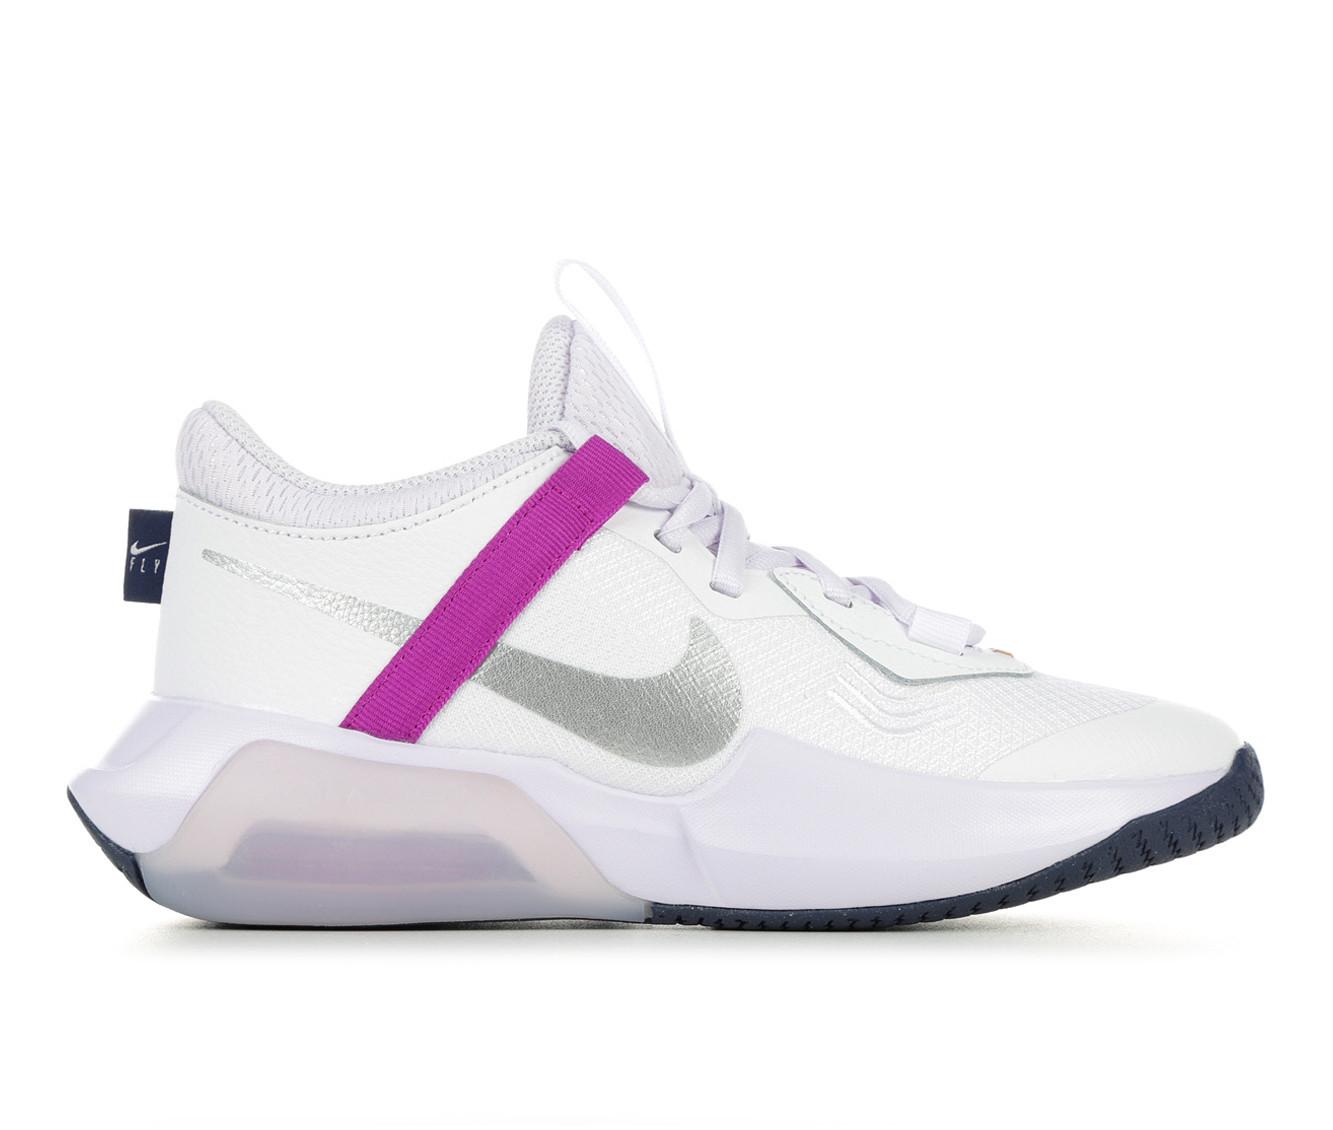 futuristic basketball shoes